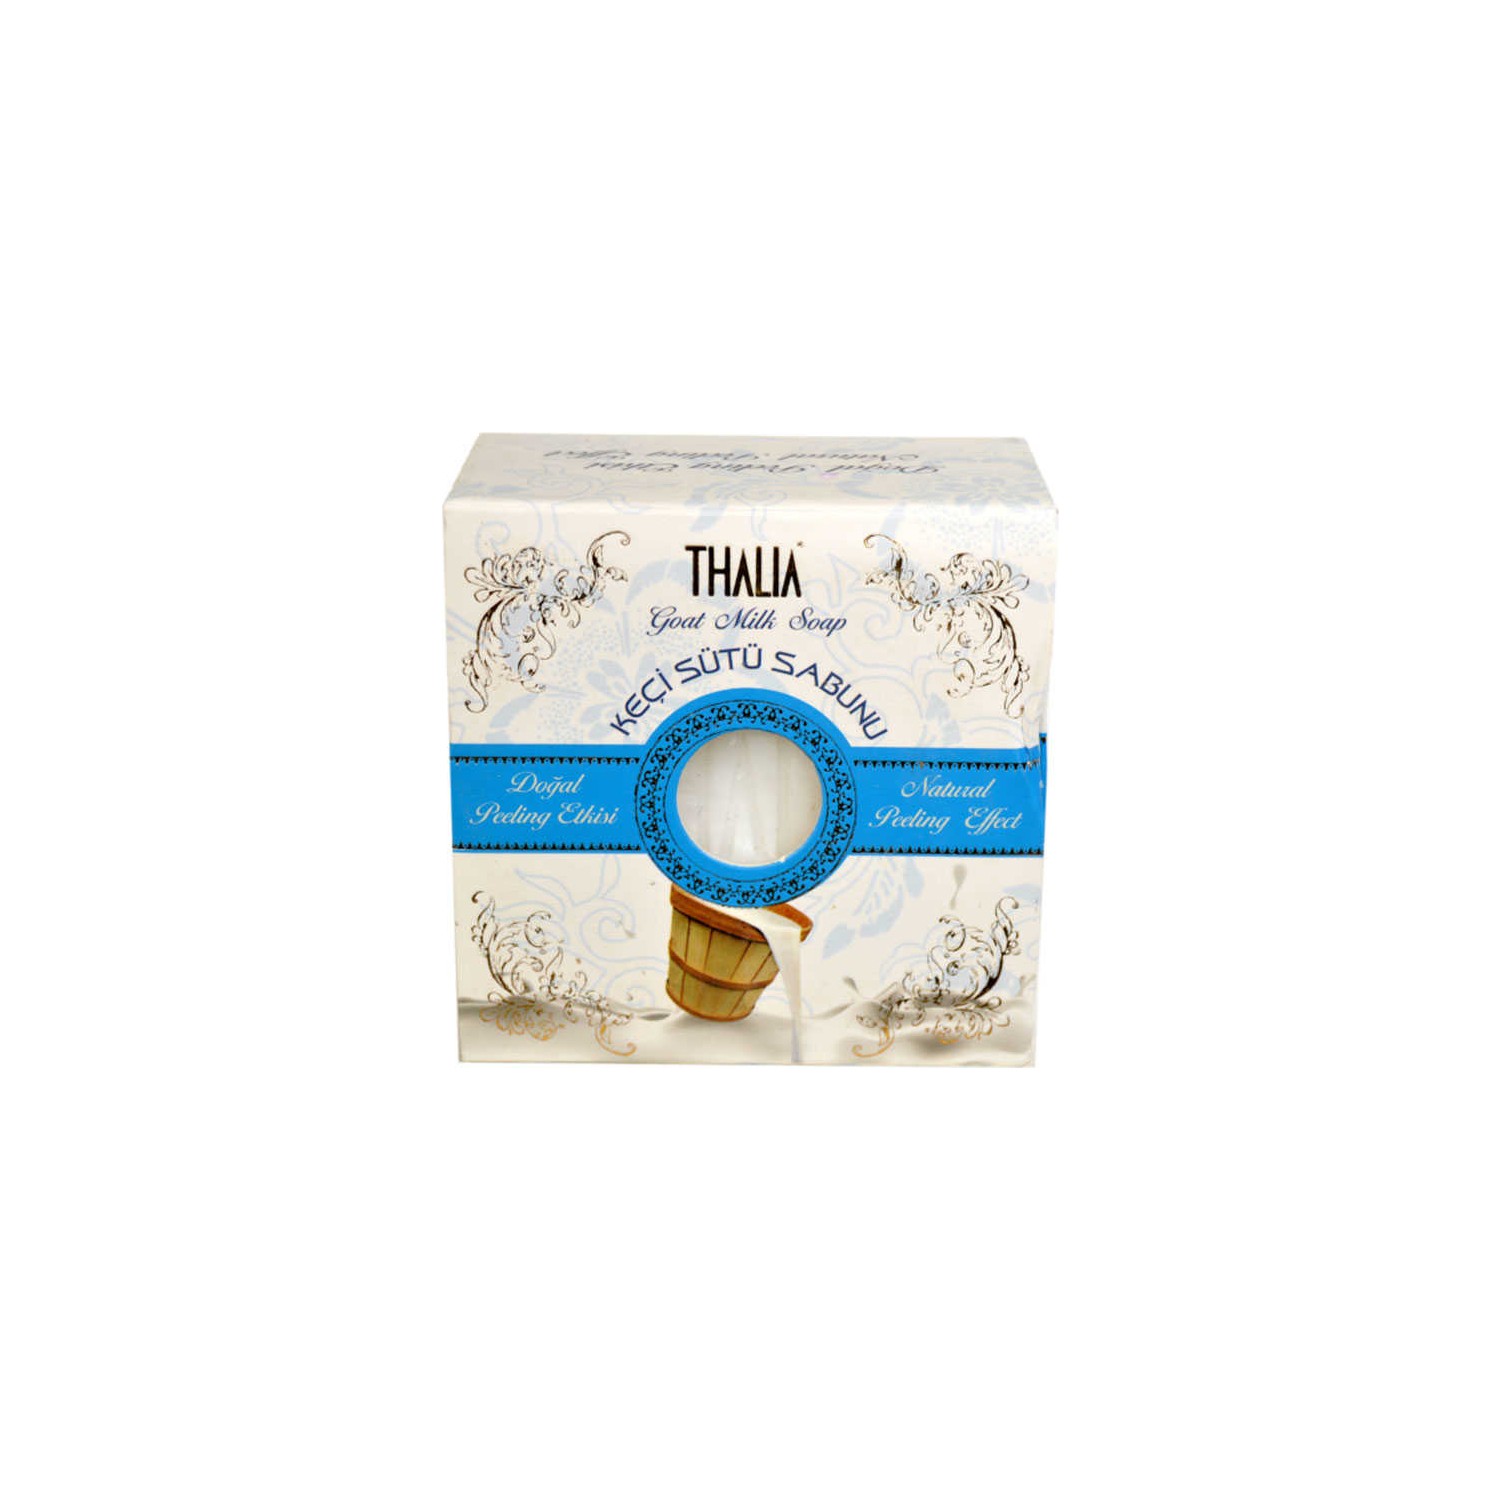 Мыло Thalia с козьим молоком шелковое мыло для ремонта кожи с протеином 100 г мыло из натурального шелка ручной работы с козьим молоком мыло с контролем жирности клещей